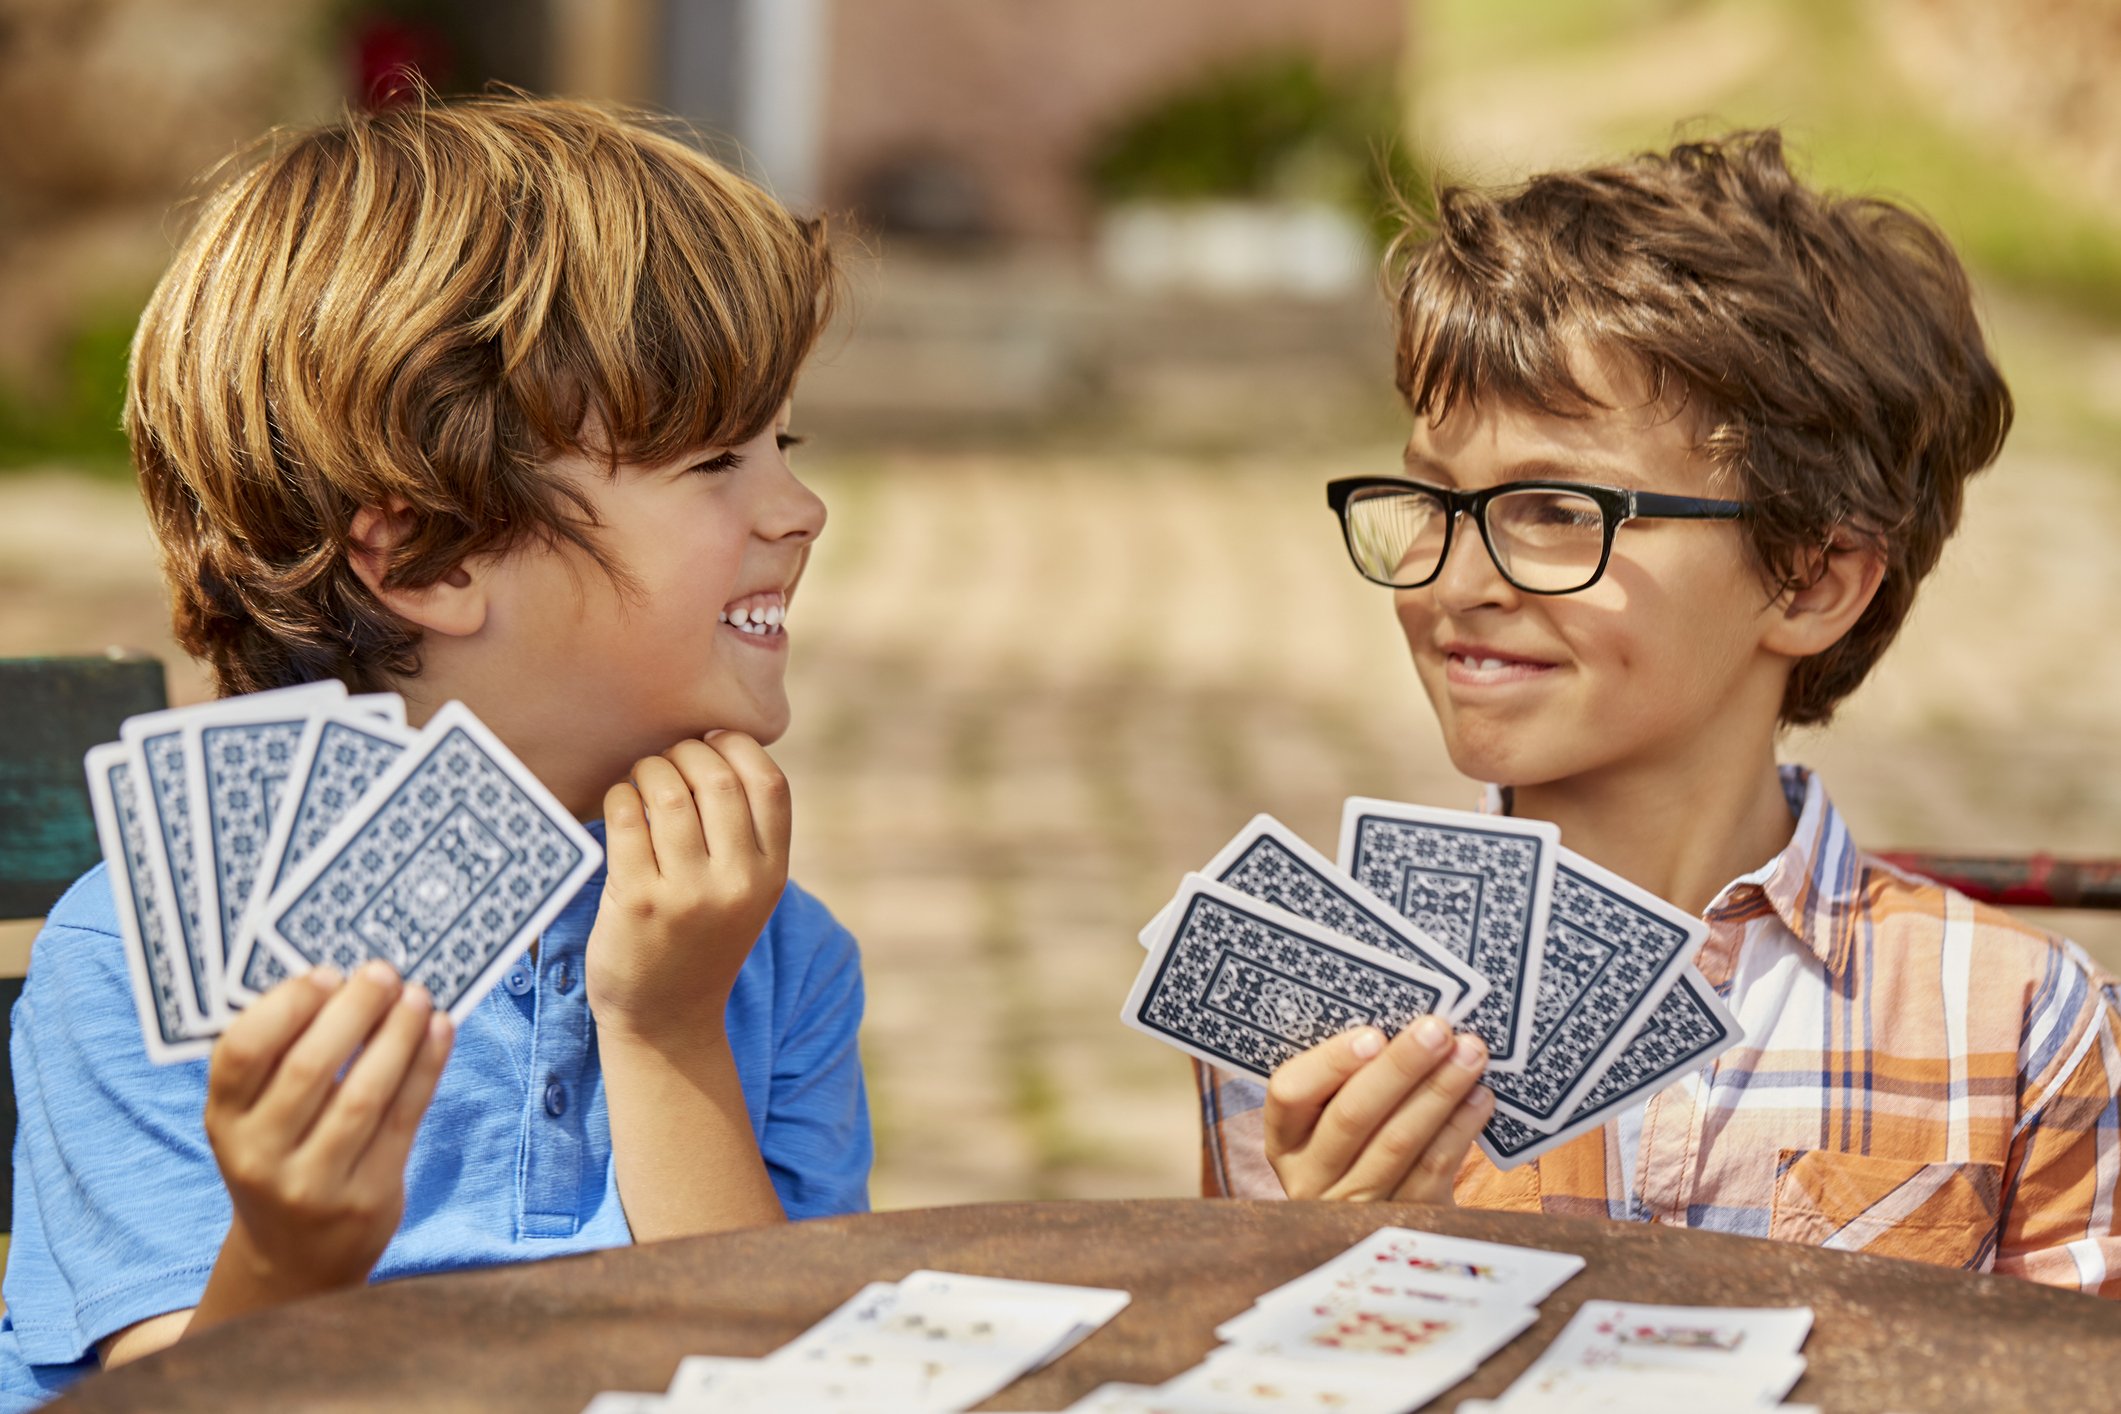 8 jogos de cartas fáceis de aprender e jogar